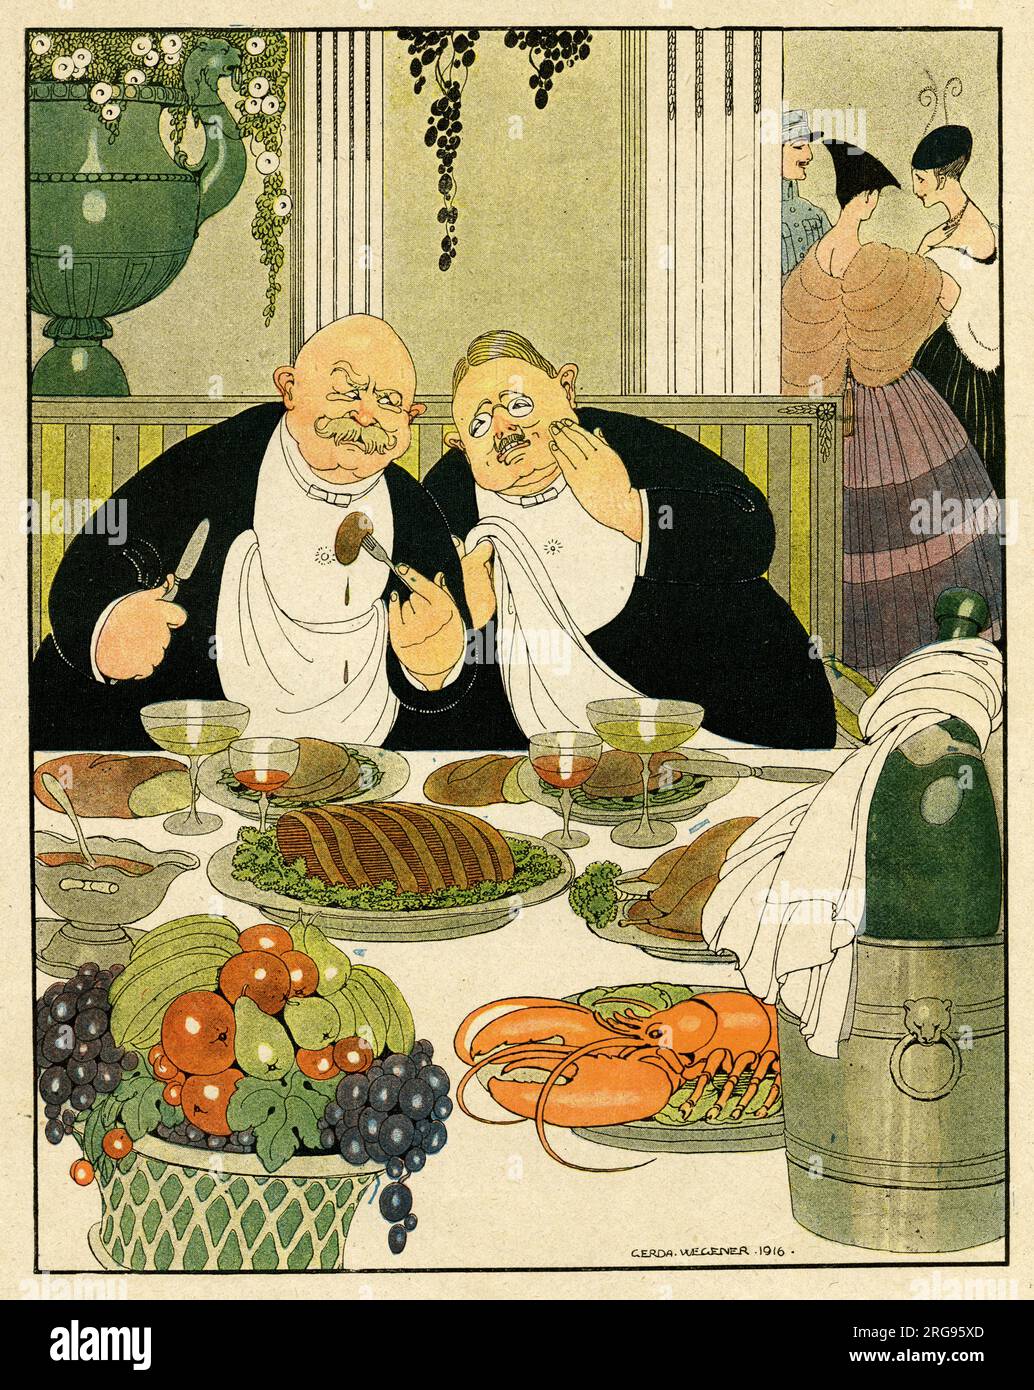 Cartoon, zwei deutsche Spione. Zwei fette Männer an einem Tisch mit Essen sind sich einig, dass es sich lohnt, Spione zu sein und ihr Leben zu riskieren, wenn sie so gut essen können. Stockfoto